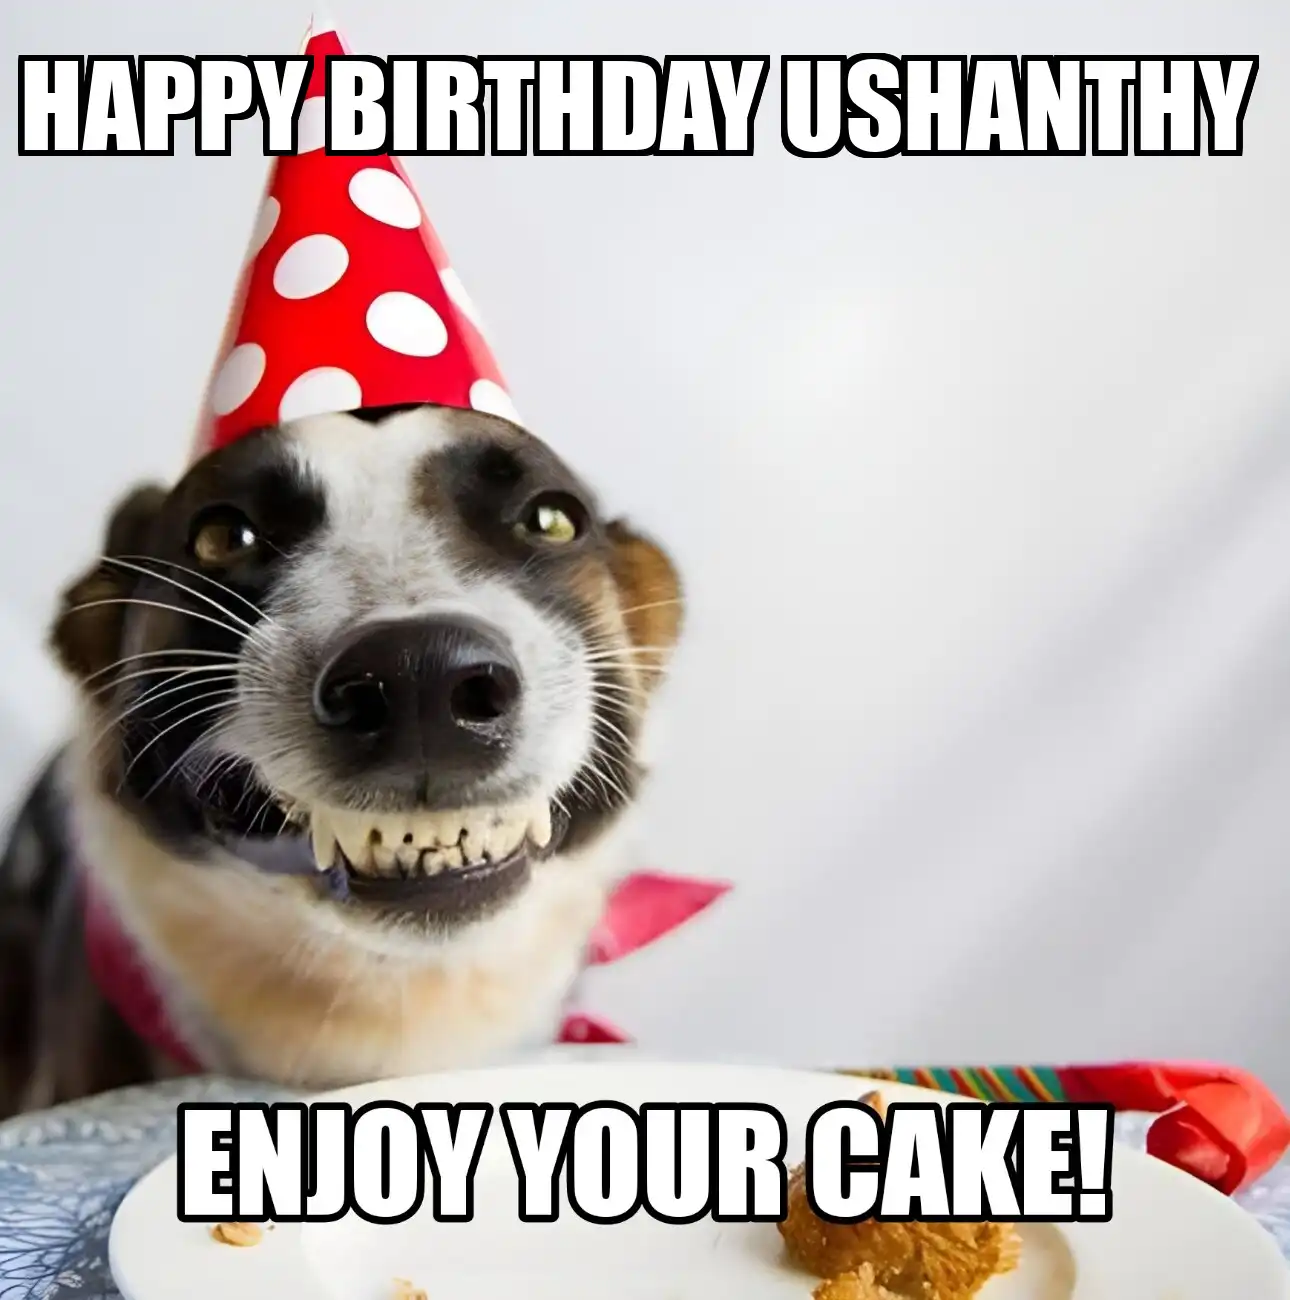 Happy Birthday Ushanthy Enjoy Your Cake Dog Meme